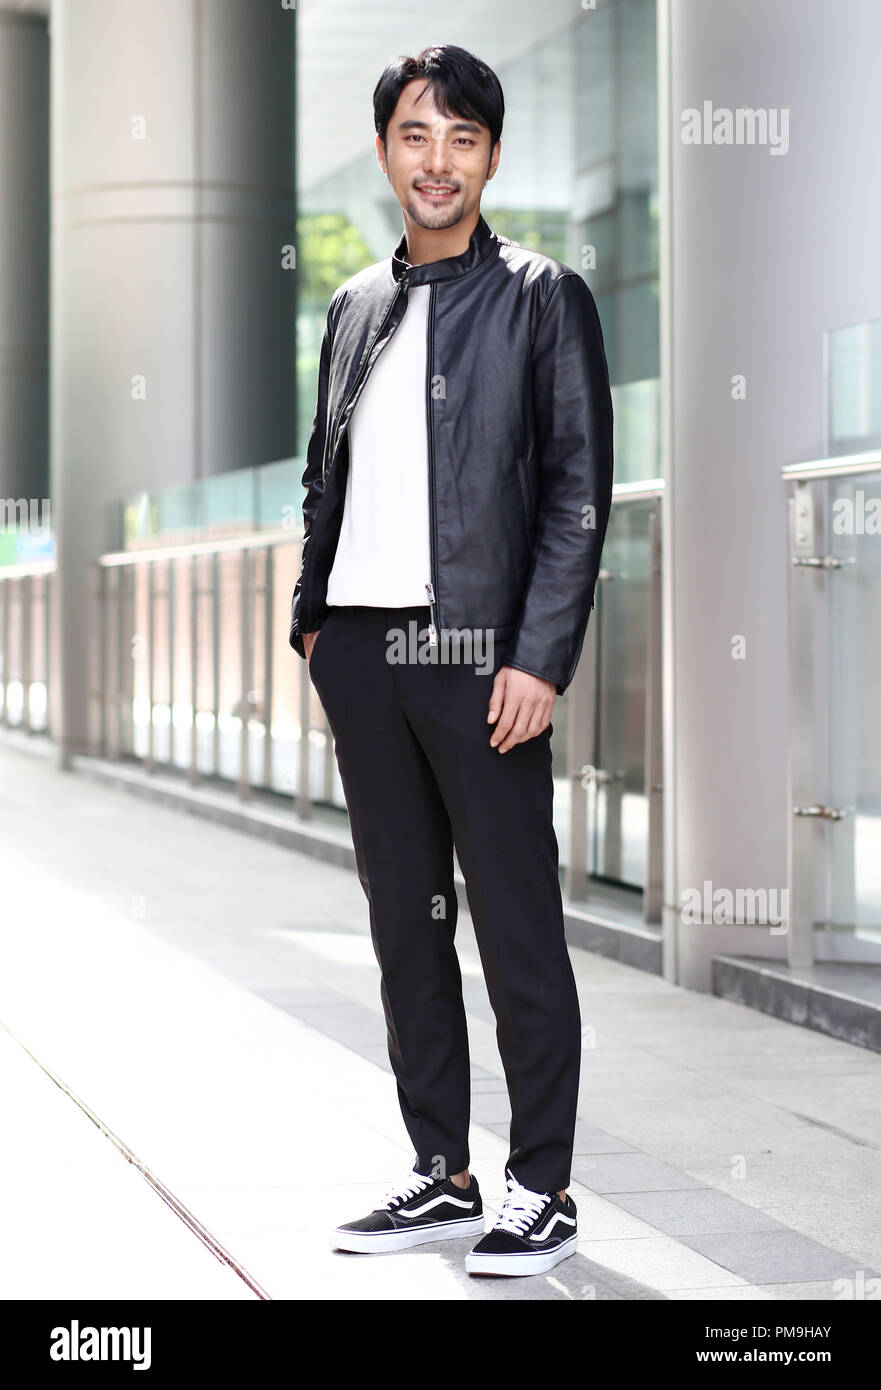 18 Sep, 2018. S. actor Yoon Joo-hombre actor surcoreano Yoon Joo- que protagoniza el drama 'Mr. Sunshine', posa para una fotografía antes de una entrevista con la agencia de noticias Yonhap